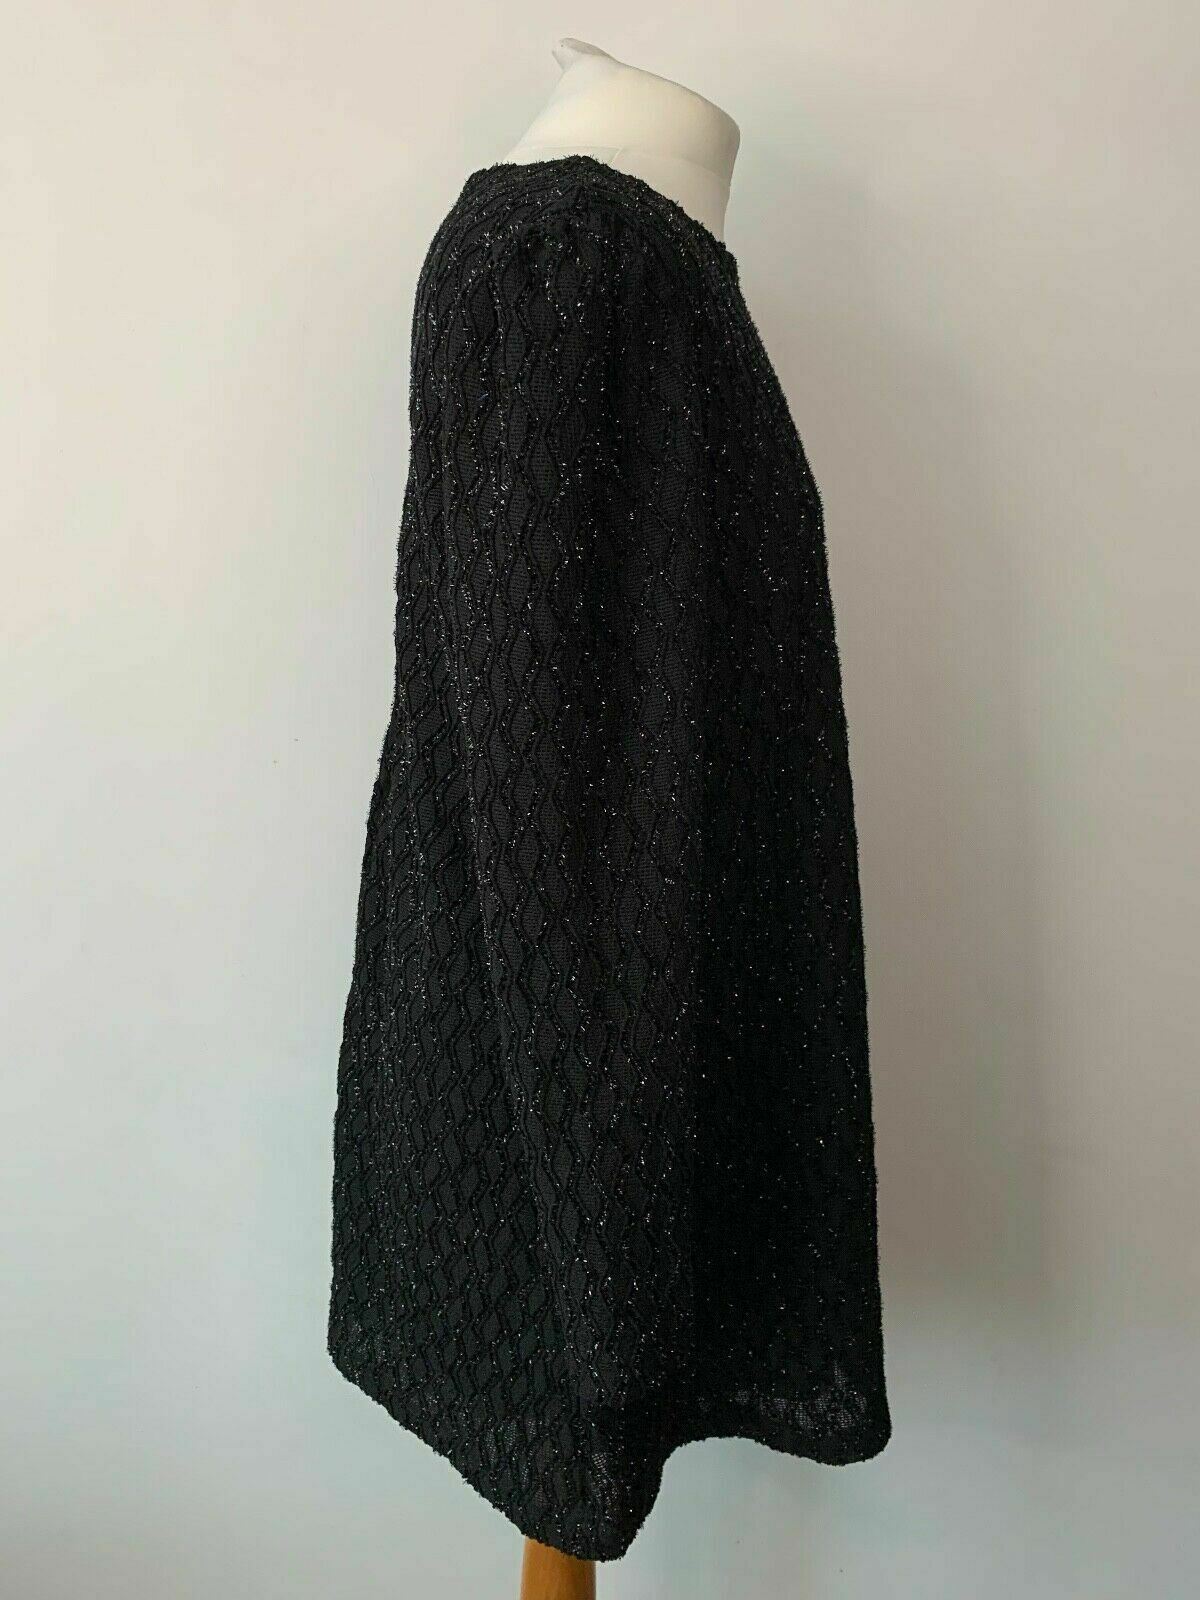 SHEIN Metallic Thread Glitter Textured Tweed Black Dress Size L 12 / 14